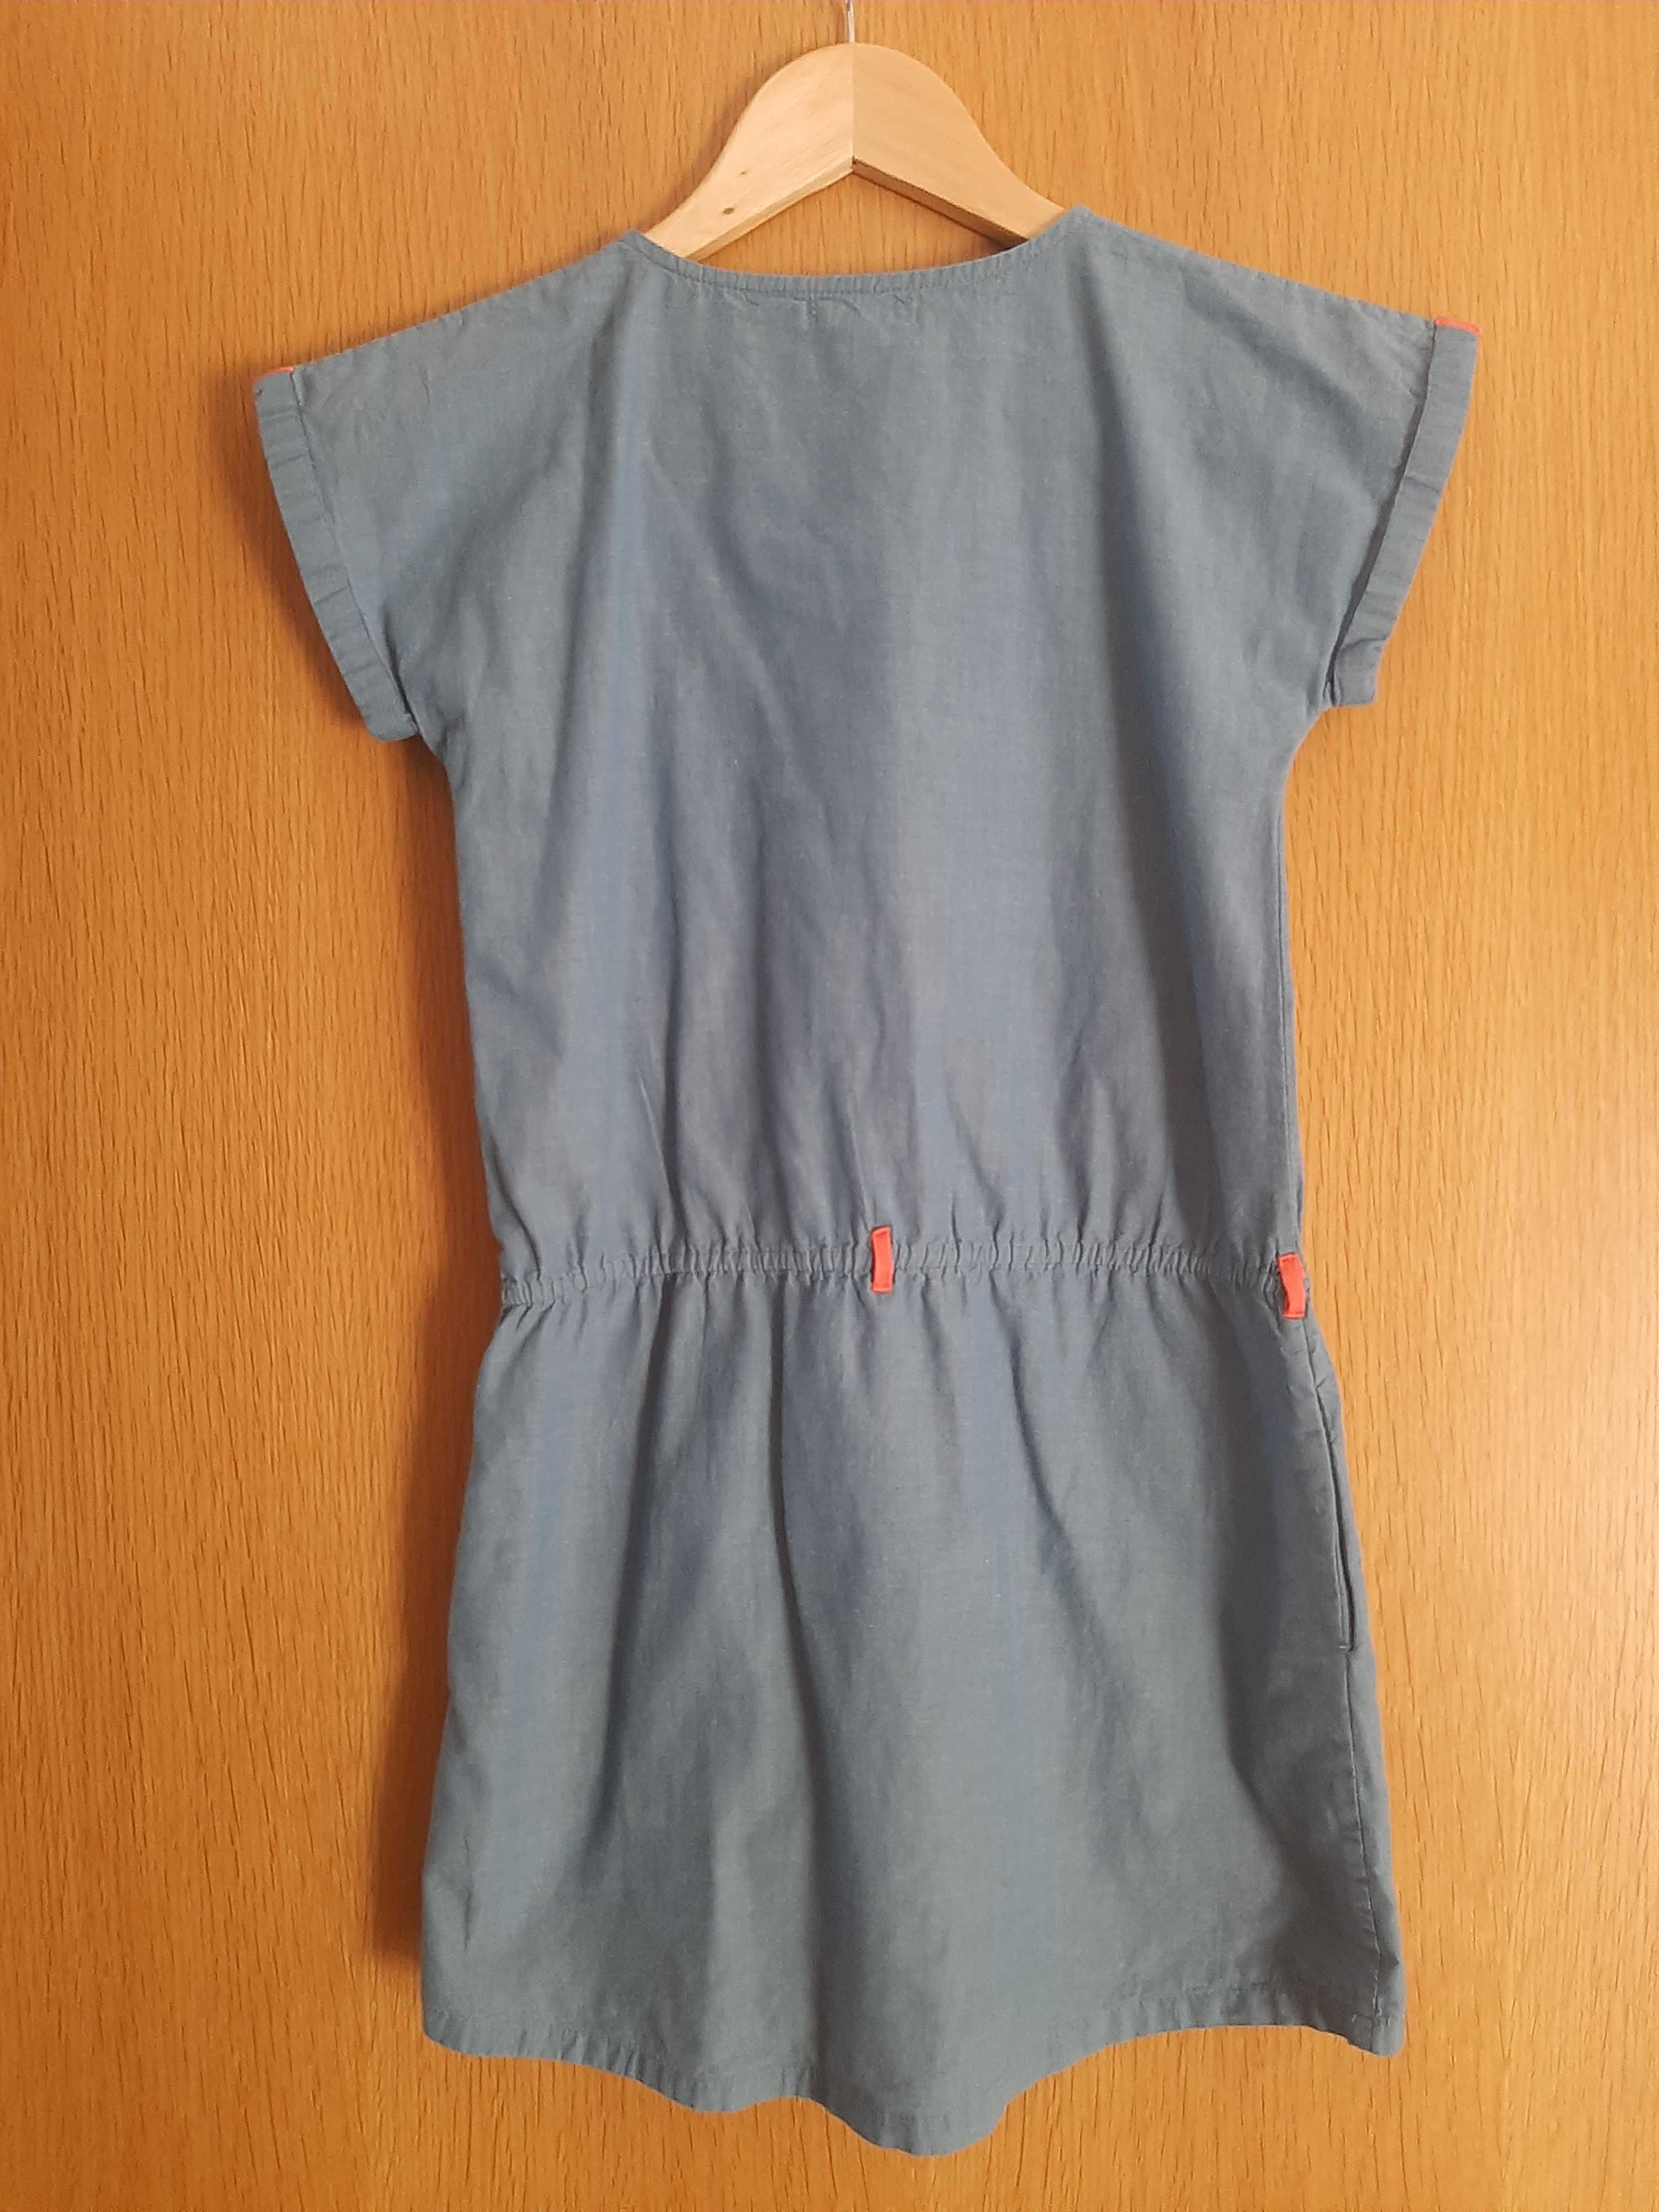 Vestido algodão azul ganga -10 anos (140 cm)